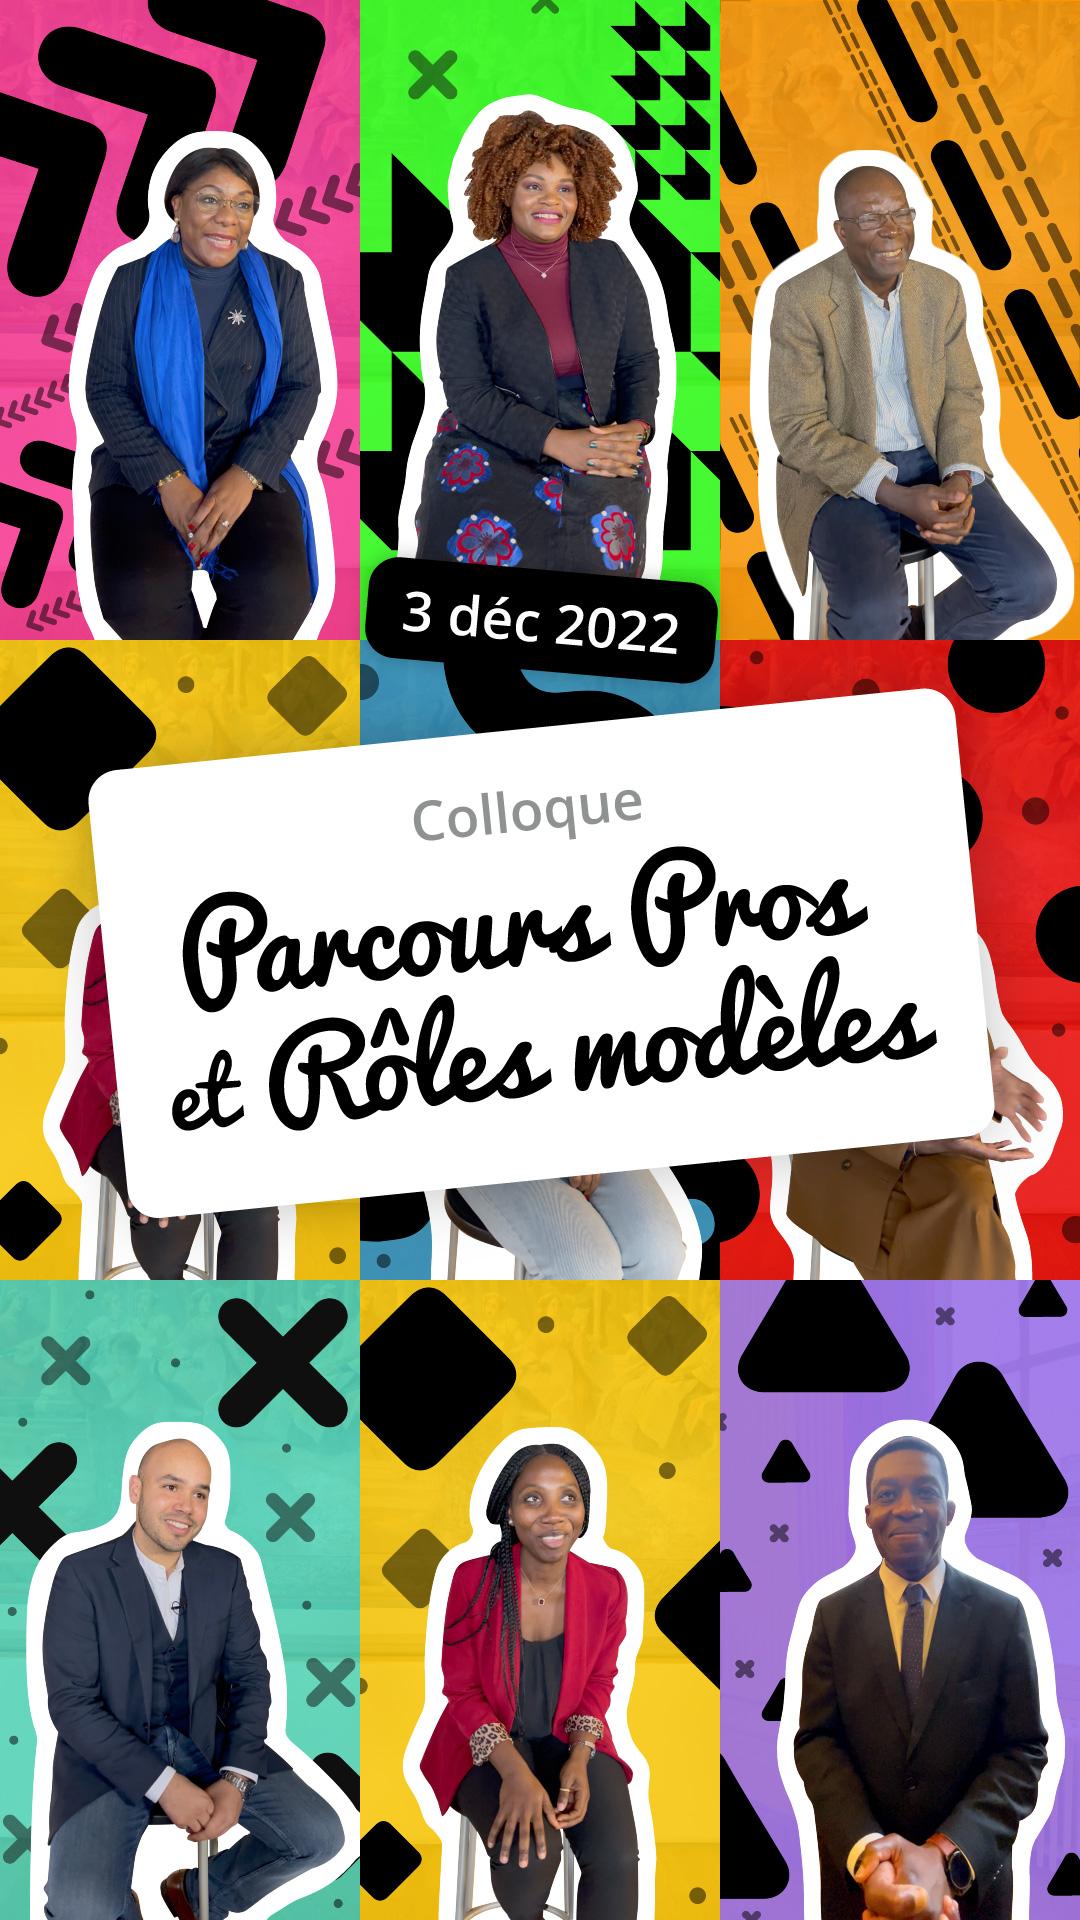 Générique de la vidéo récapitulative du colloque "Parcours pros et rôles modèles" qui a eu lieu le 3 décembre 2022 à la mairie du 10ème arrondissement de Paris